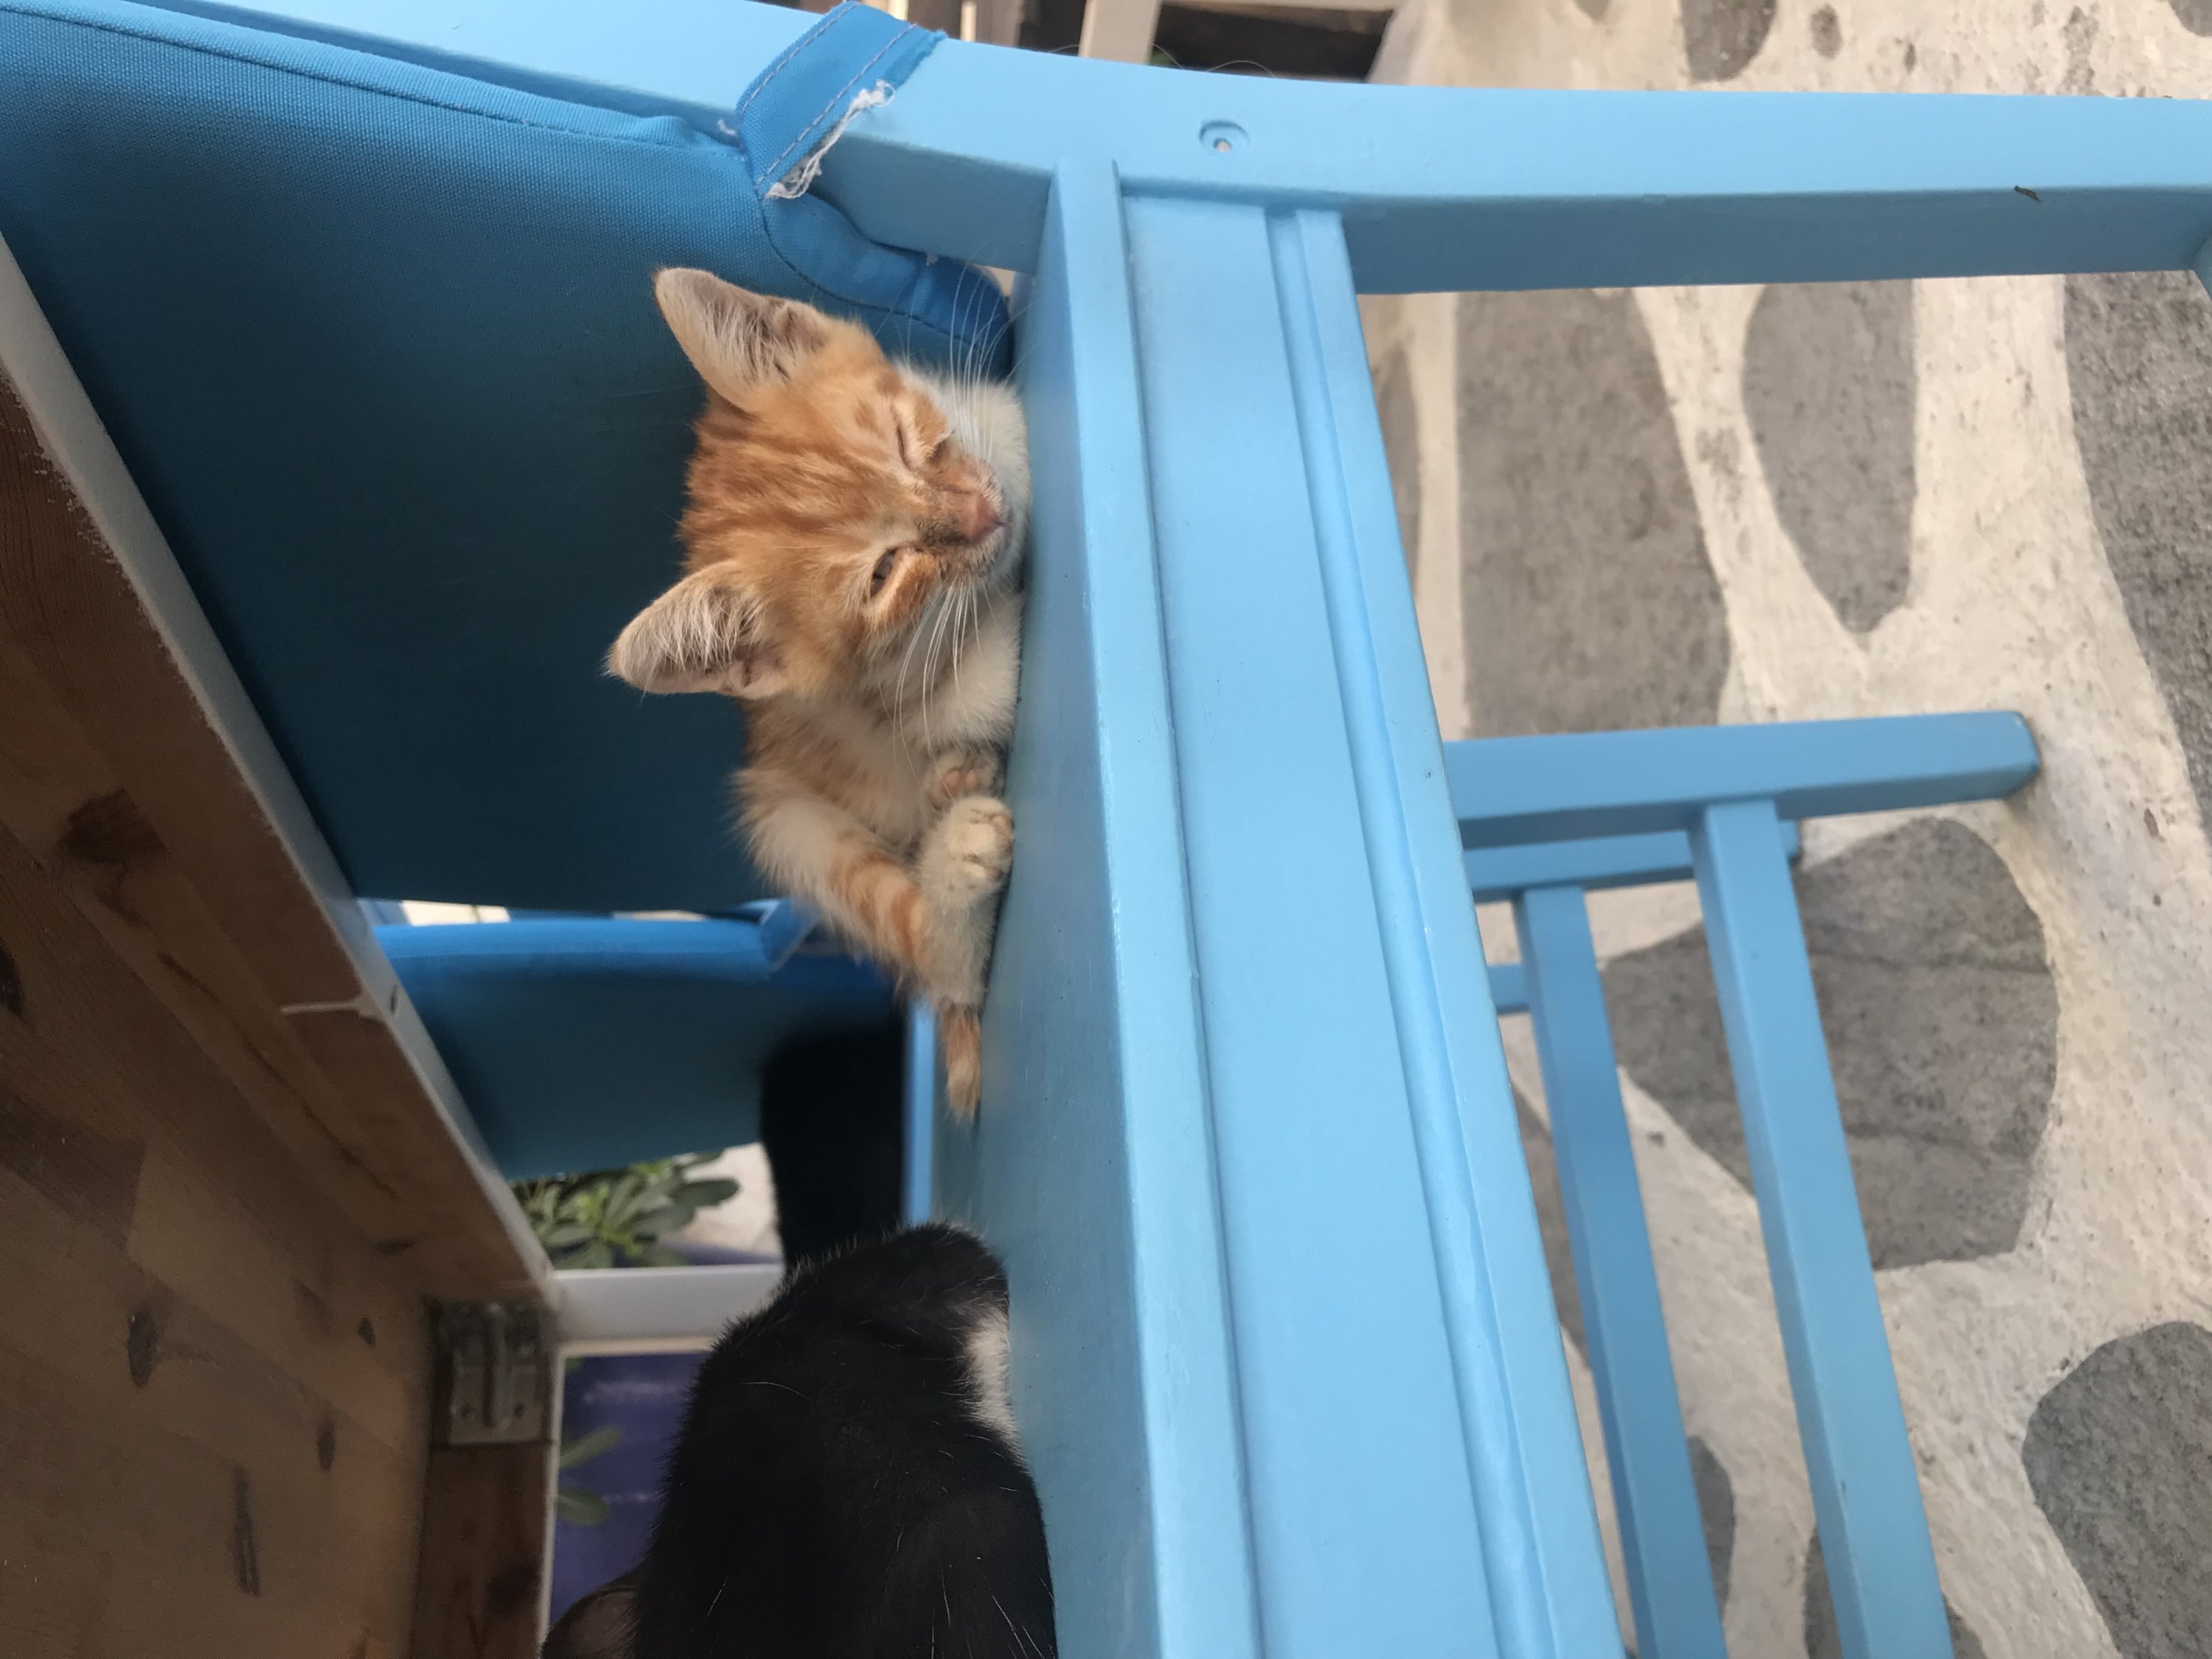 Seferihisar adalah Kota Lambat, yang bahkan membuat kucing lebih malas dari biasanya, di Izmir, Türkiye, 5 Oktober 2022. (Foto oleh zge engelen)